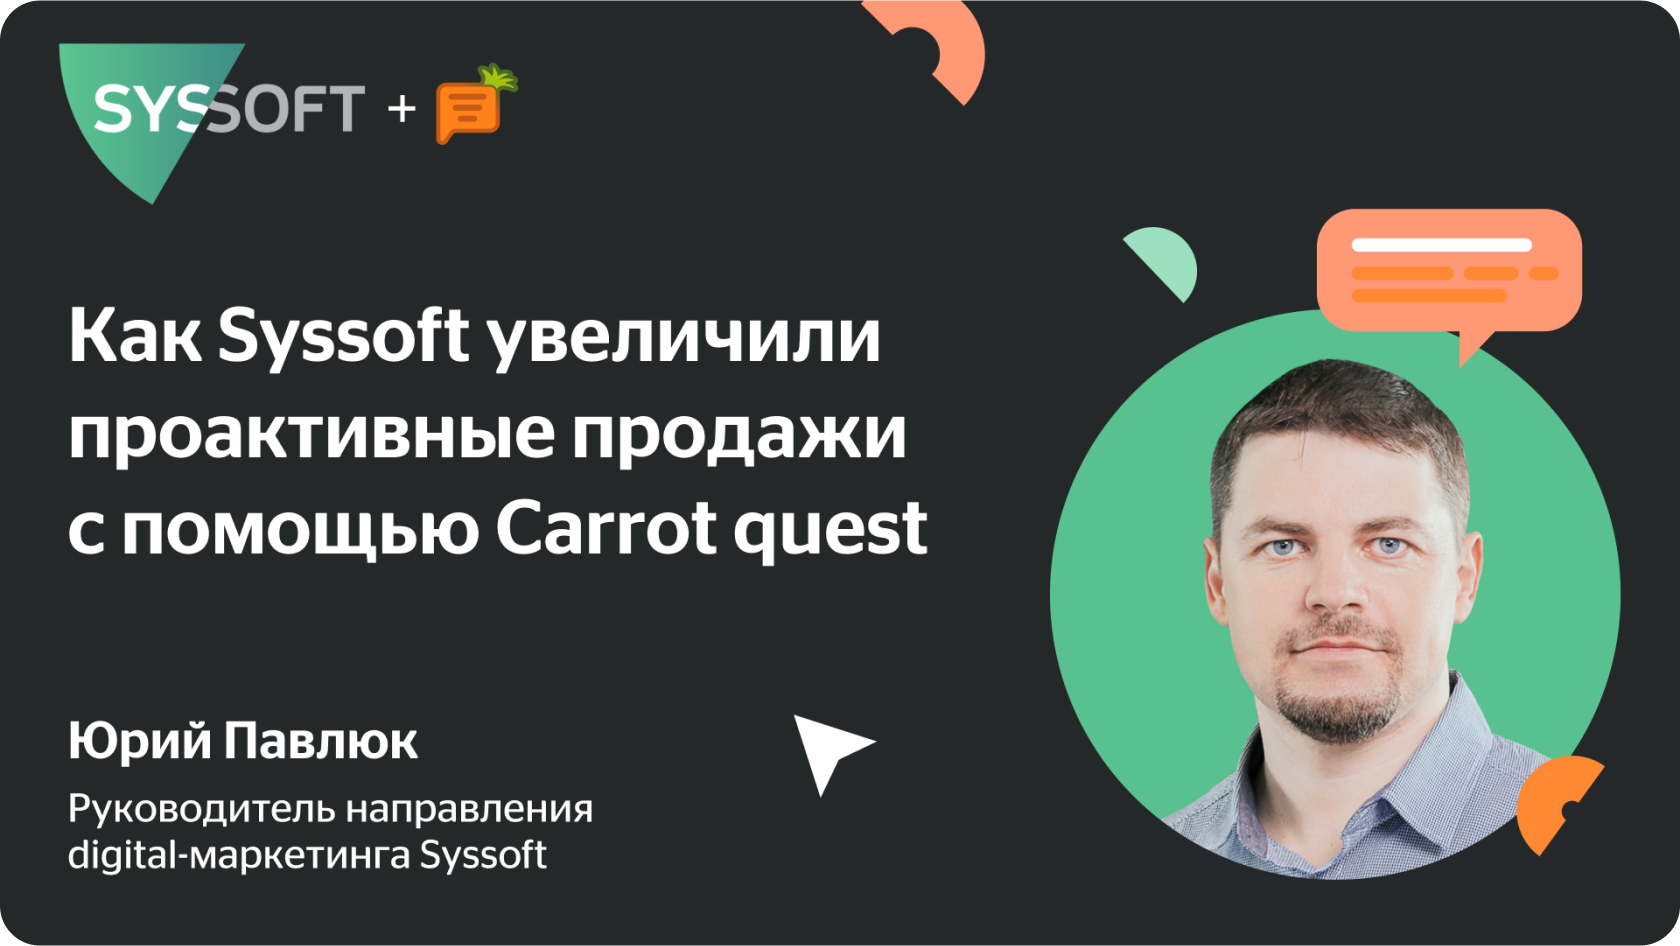 Кейс Syssoft и Carrot quest: объединили команды маркетинга и продаж, чтобы увеличить проактивные продажи и отслеживать эффективность маркетинга